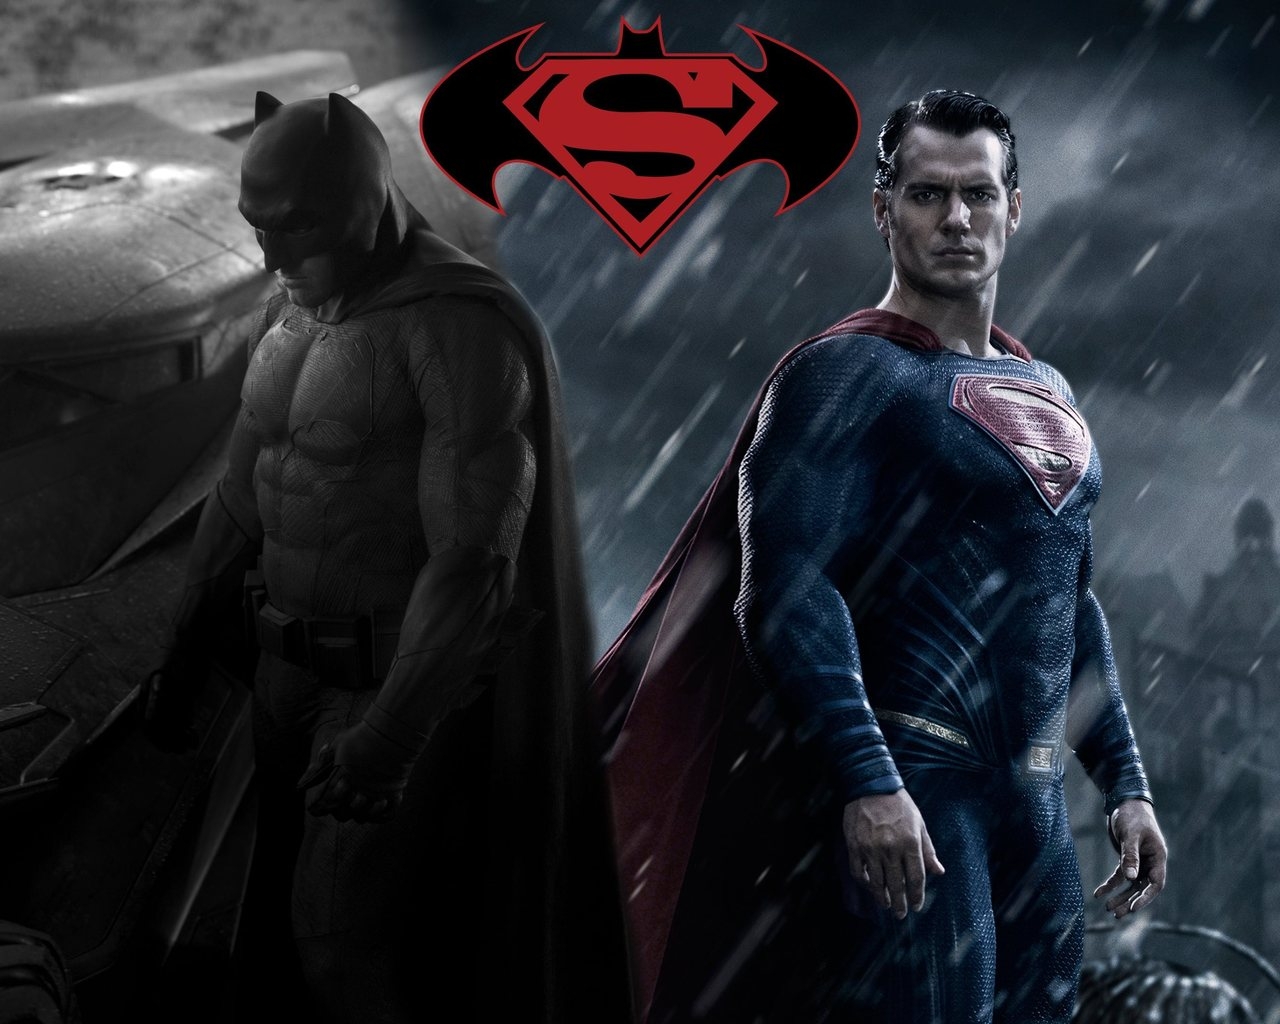 Batman vs Superman Fan Art for 1280 x 1024 resolution